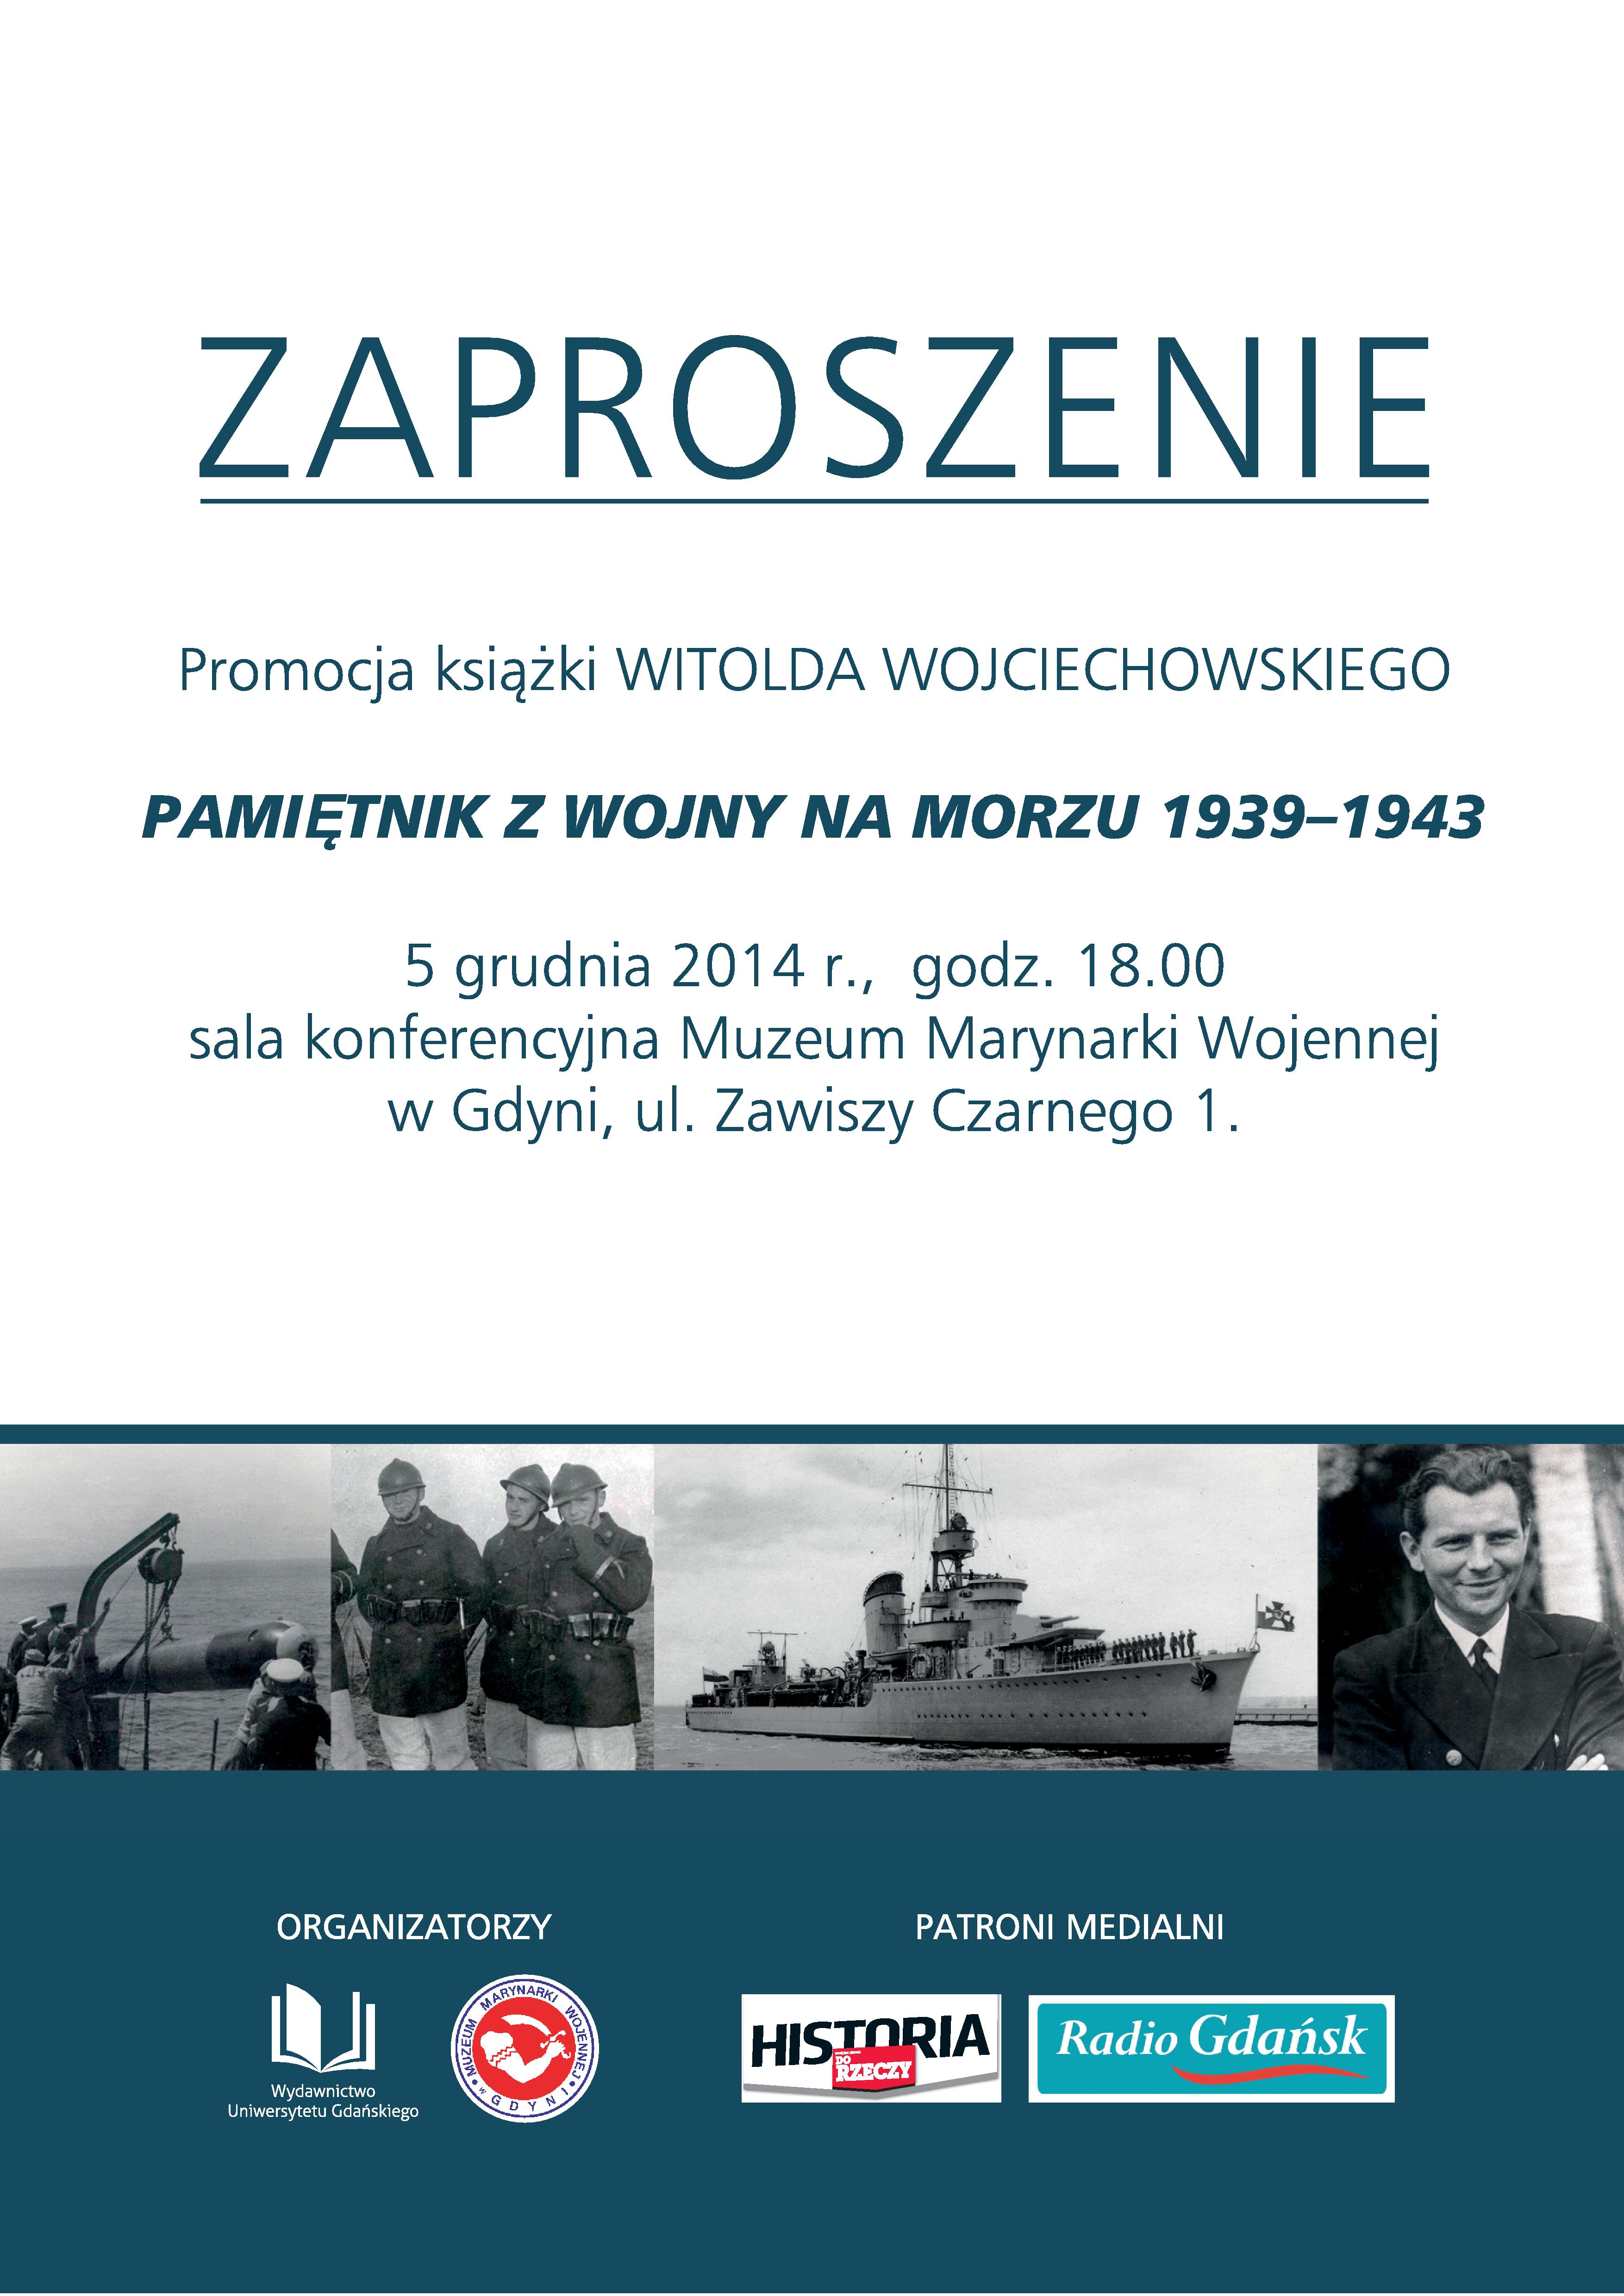 Zaproszenie-page-001